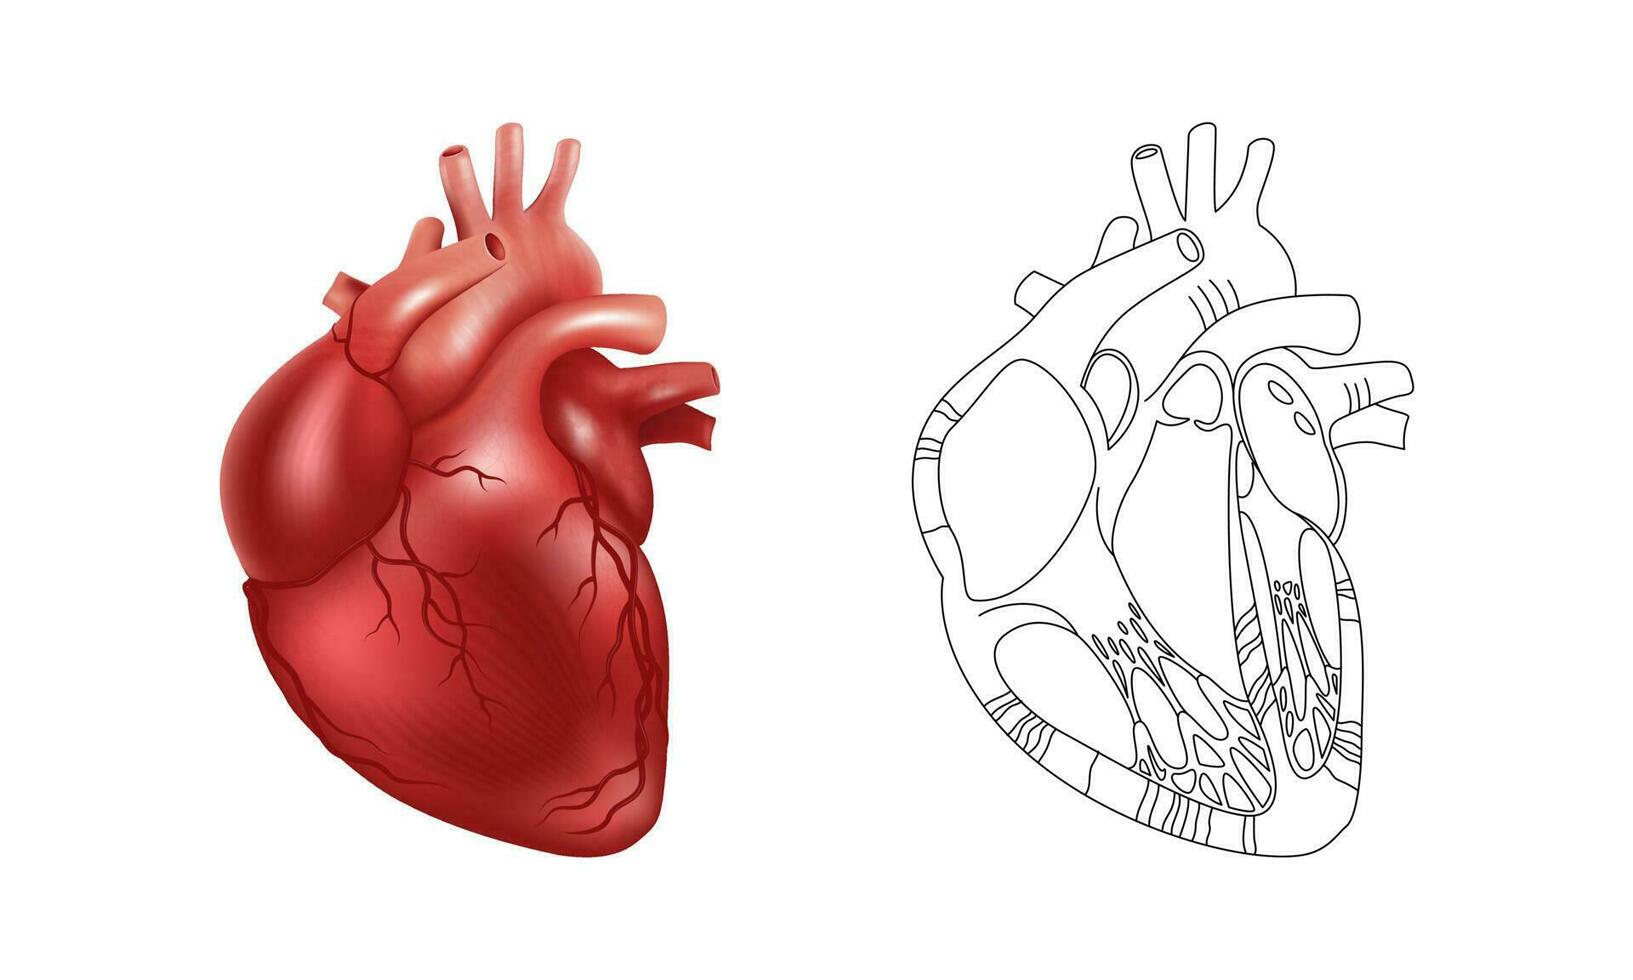 réaliste 3d Humain cœur et une schématique dessin de ses interne structure. vecteur illustration pour médical affiches, scientifique atlas et des articles